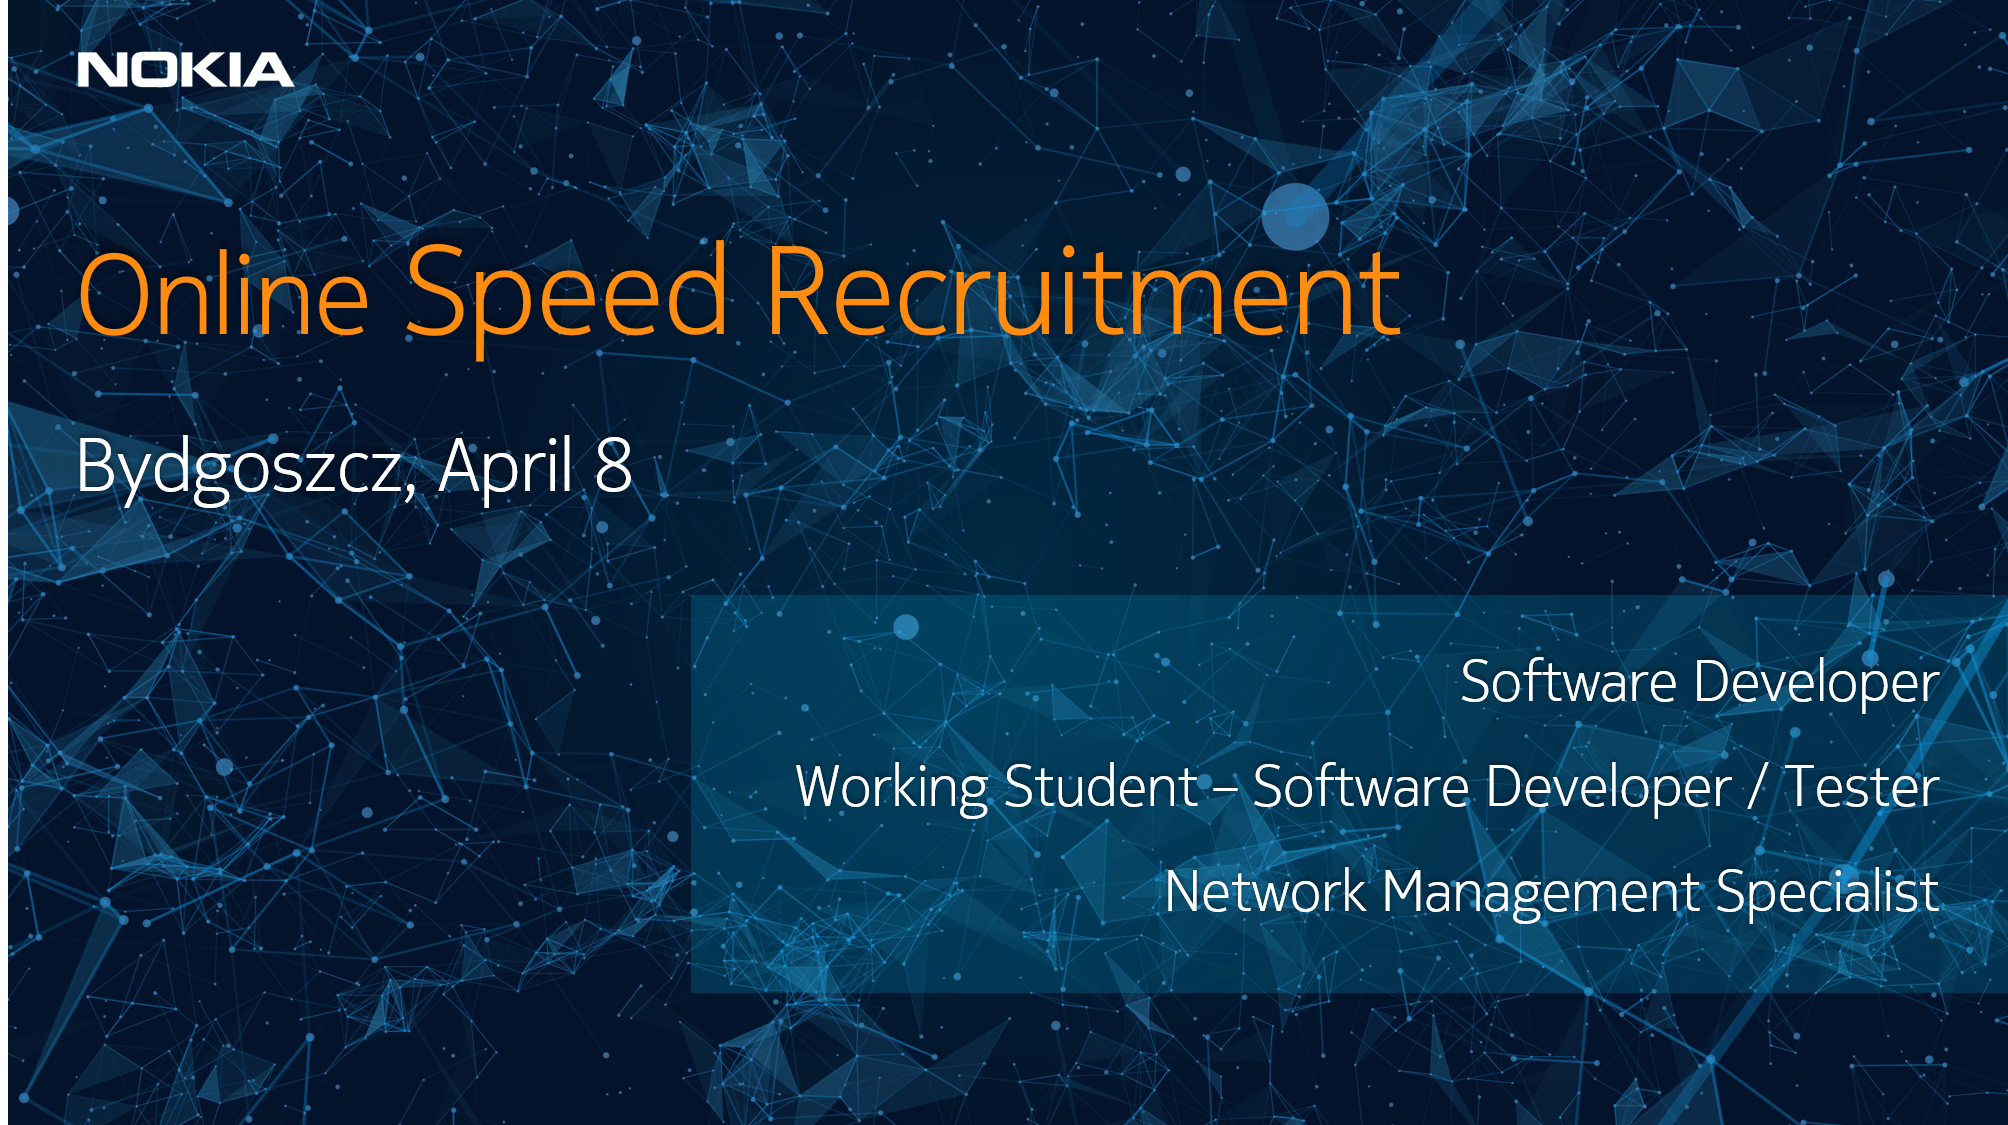 Zapraszamy na wydarzenie on-line organizowane przez firmę NOKIA – speed recruitment. 